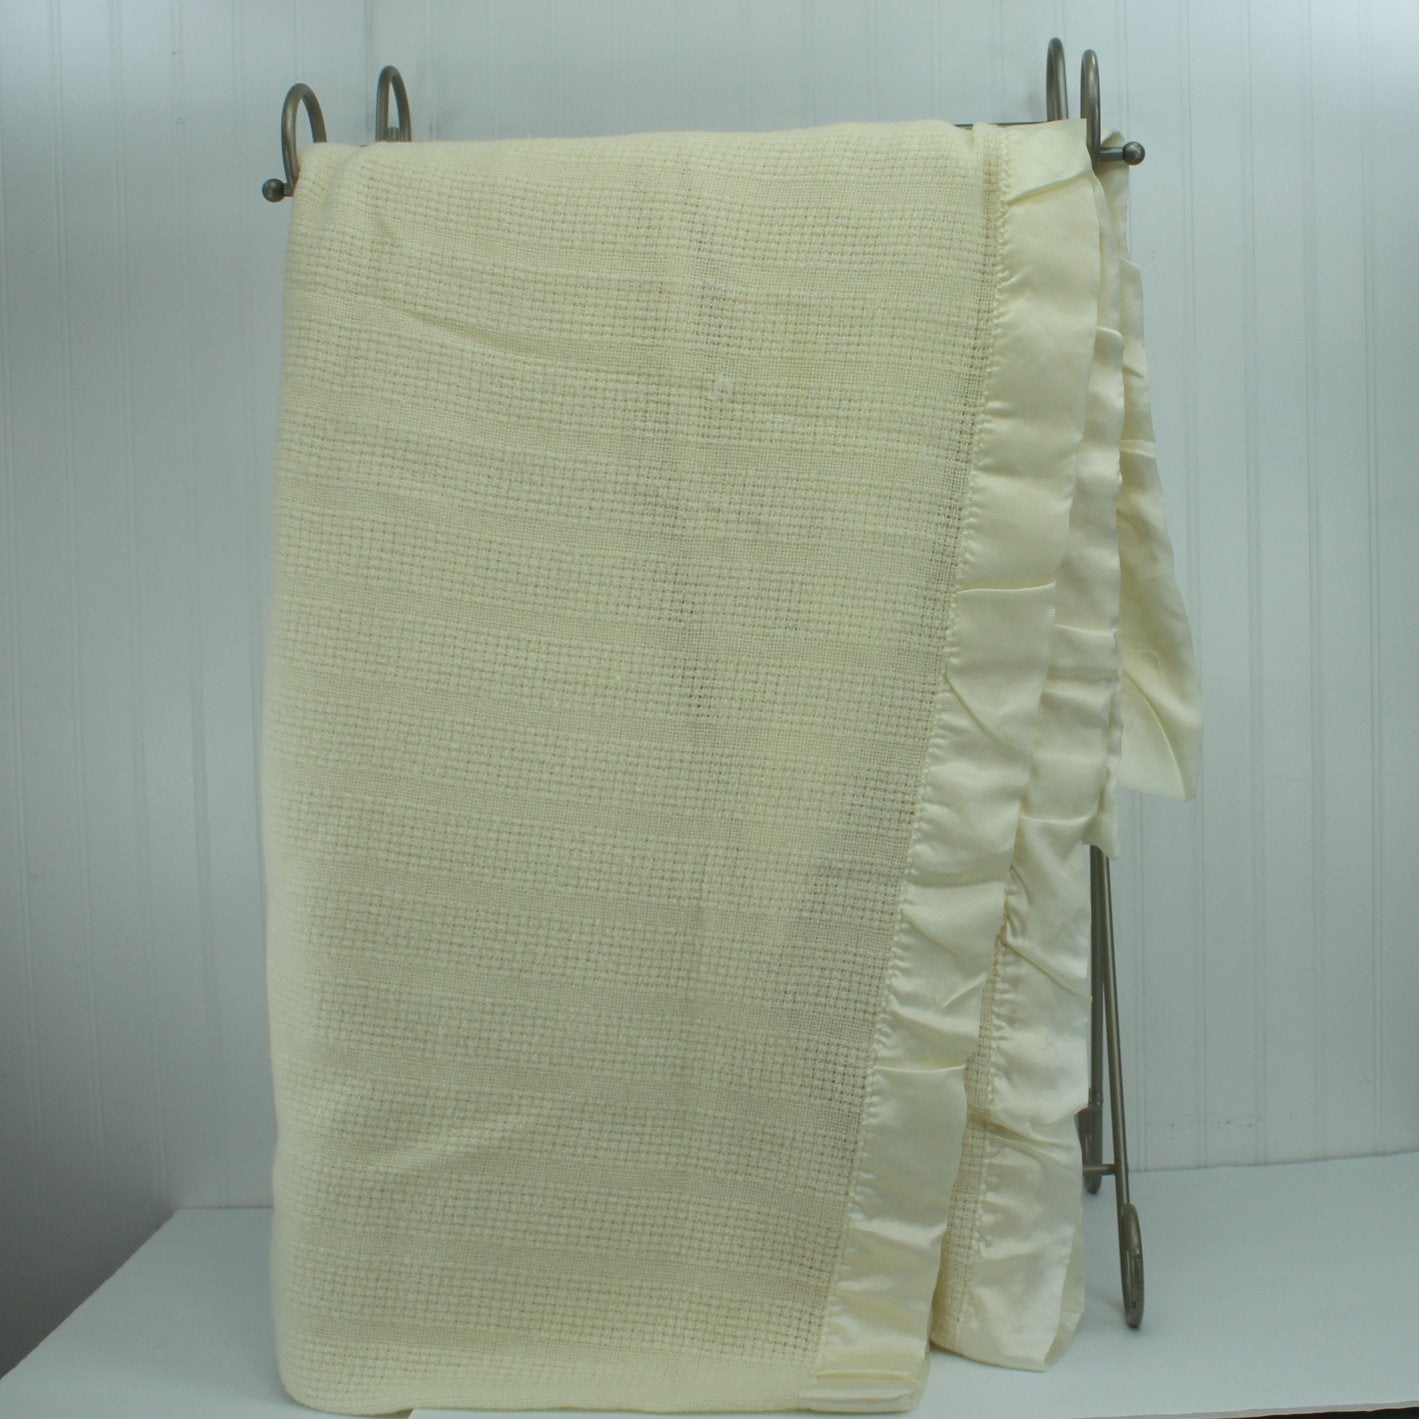 Faribault Faribo Washable Wool Blend Blanket Ivory Basketweave 102" X 87" vertical view folded blanket